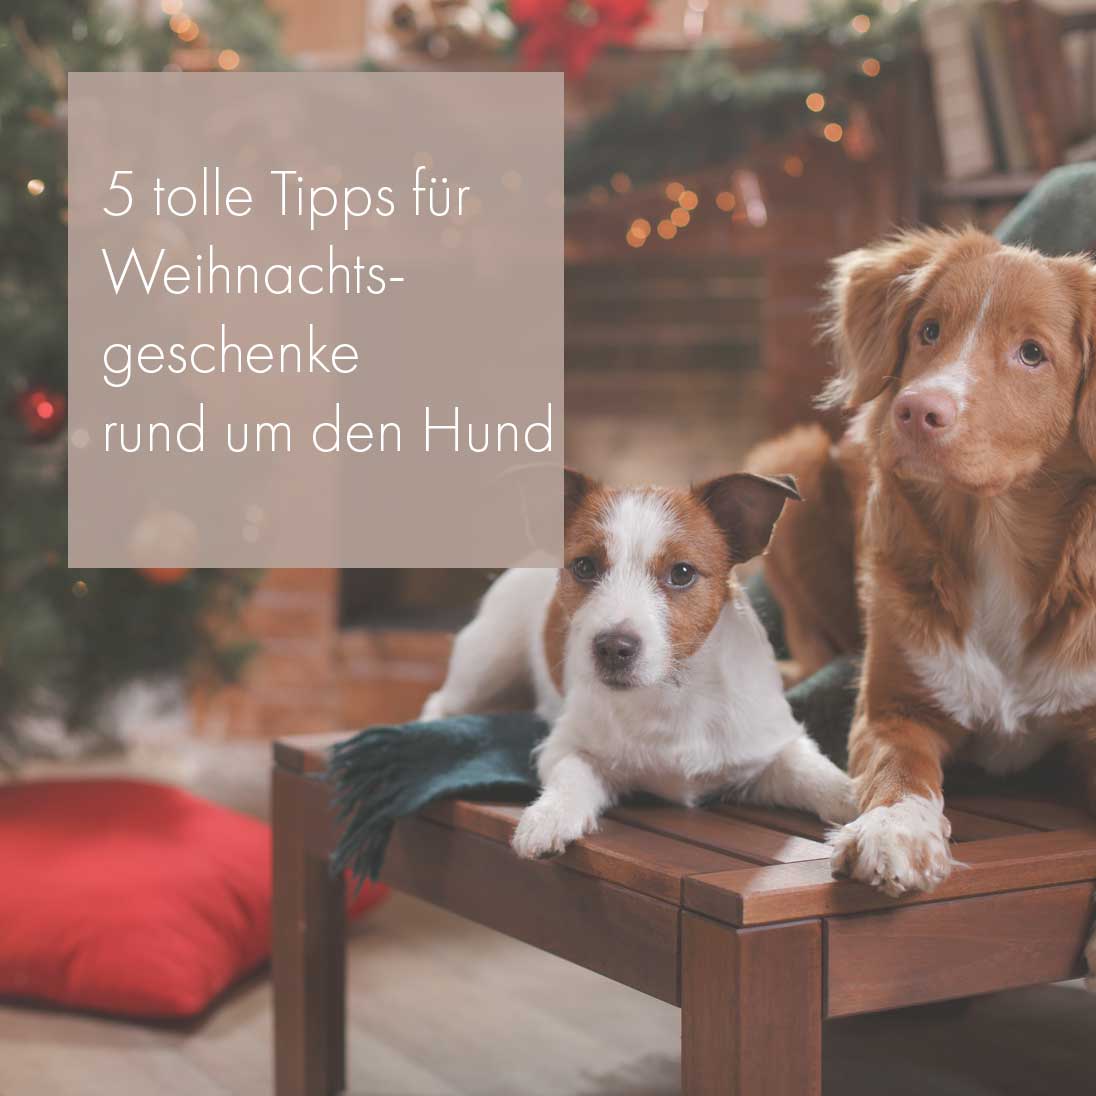 Fünf tolle Tipps für Weihnachtsgeschenke rund um den Hund